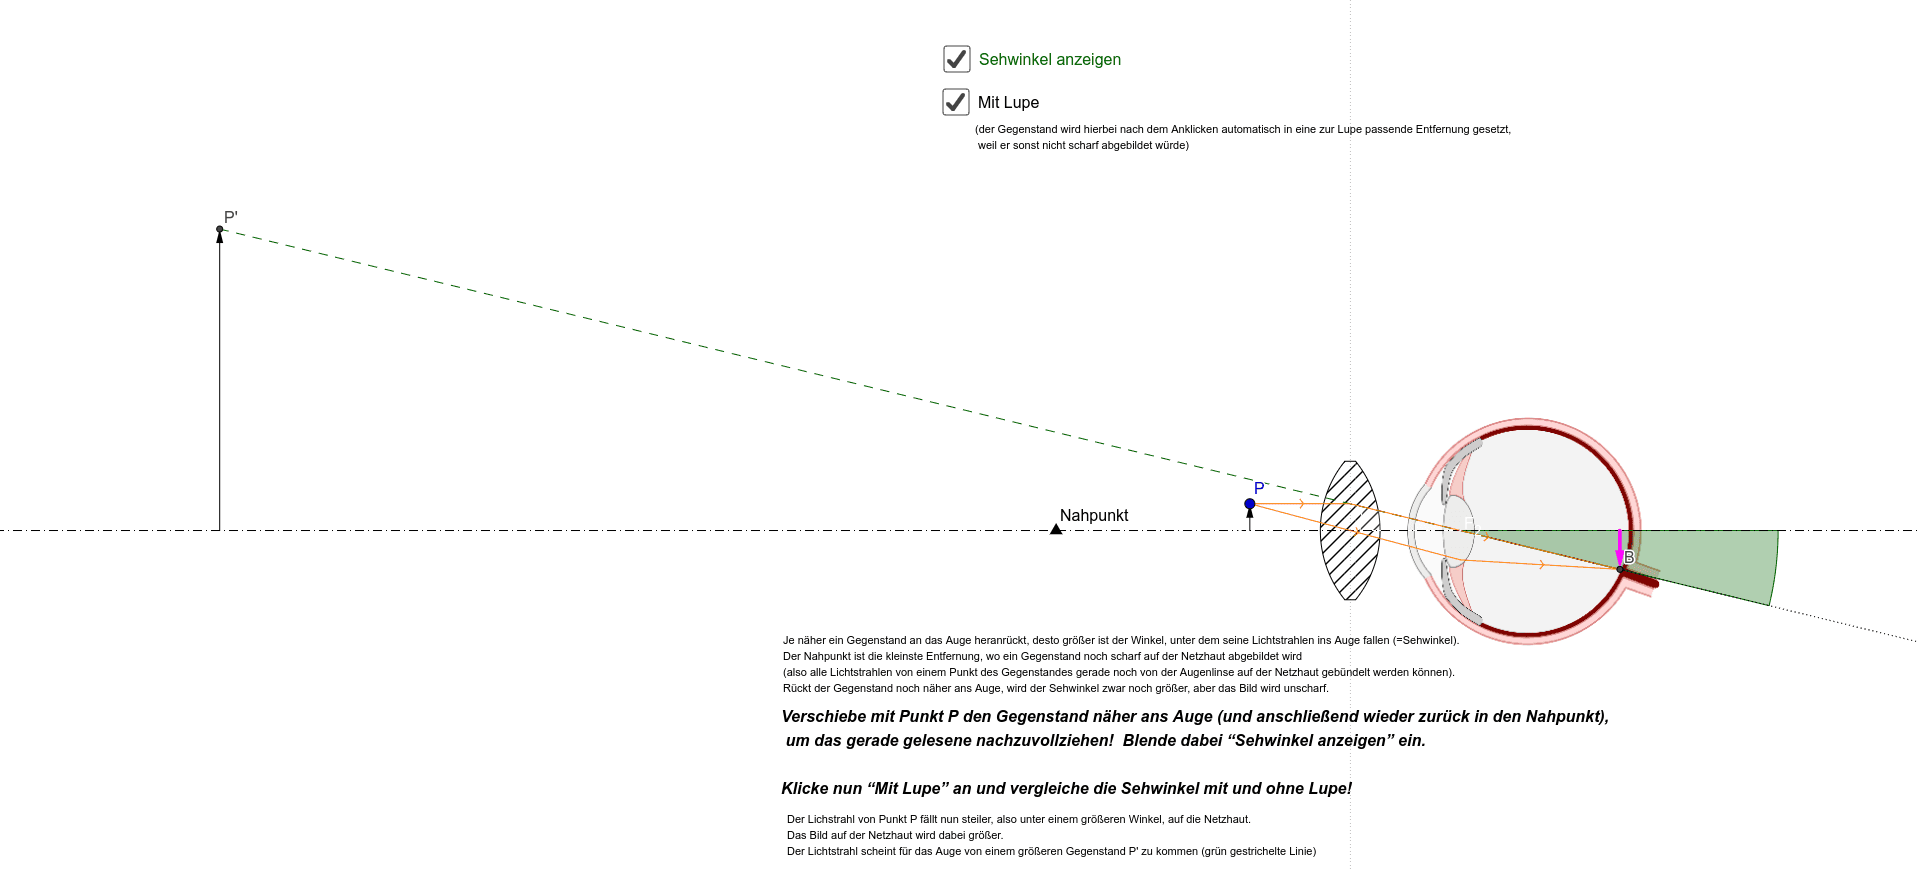 companion Predictor Backward Verwendung einer Lupe und Einfluss auf den Sehwinkel – GeoGebra